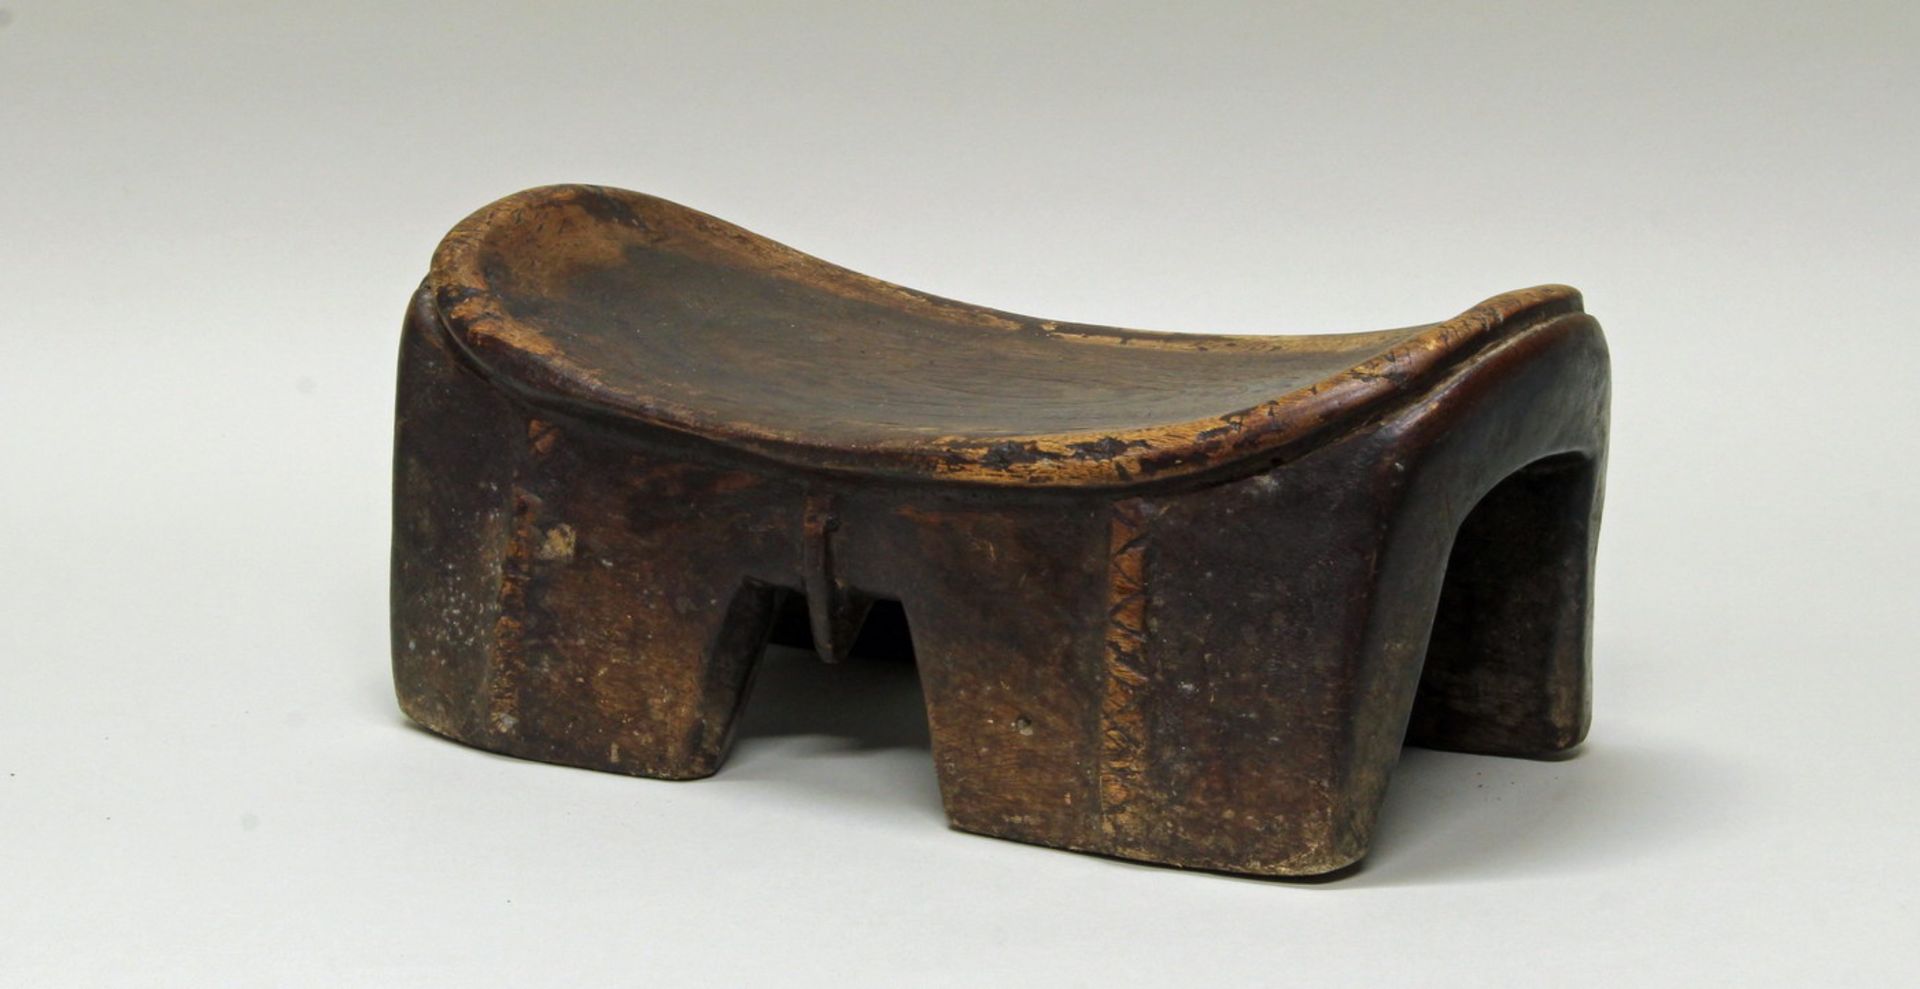 Sitzhocker, Äthiopien, Afrika, 20. Jh., authentisch, Holz, 15 x 37 x 17 cm. Provenienz: